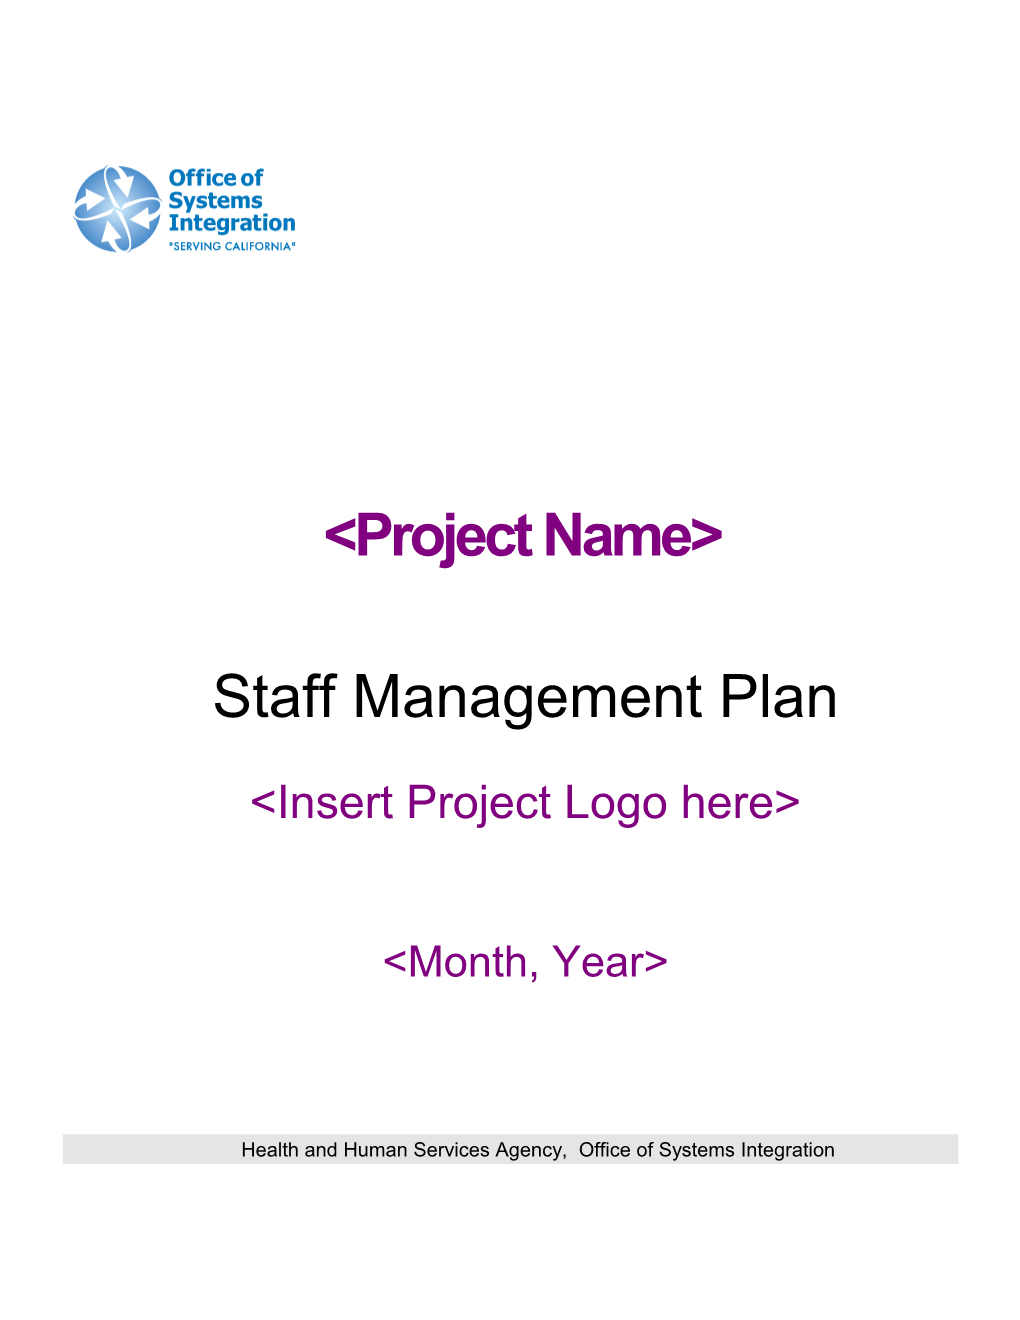 Staff Management Plan Template